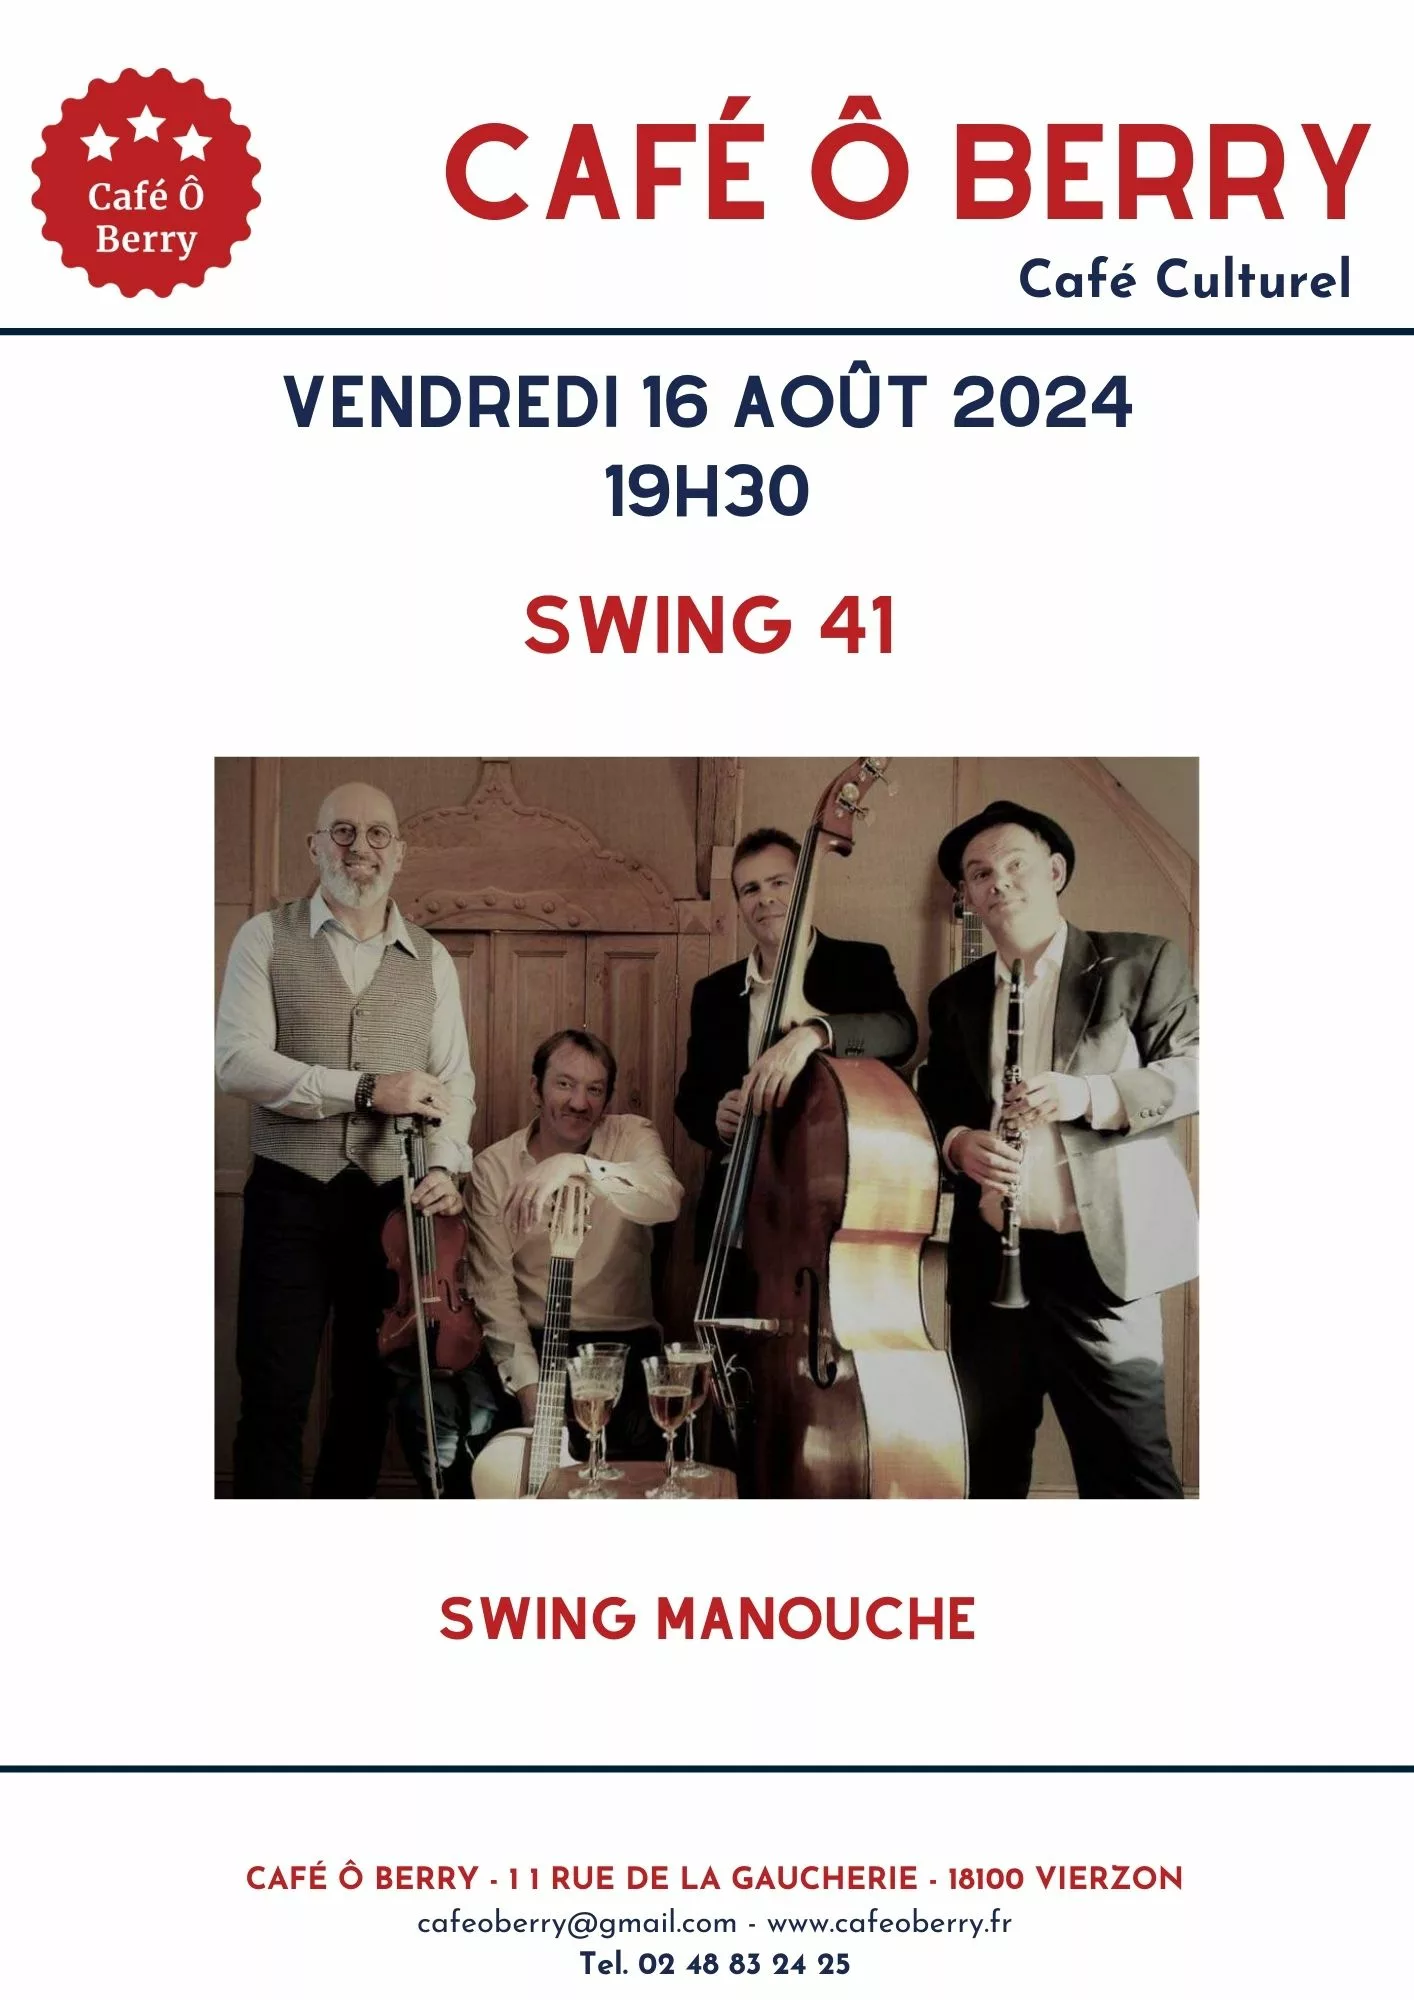 Swing 41